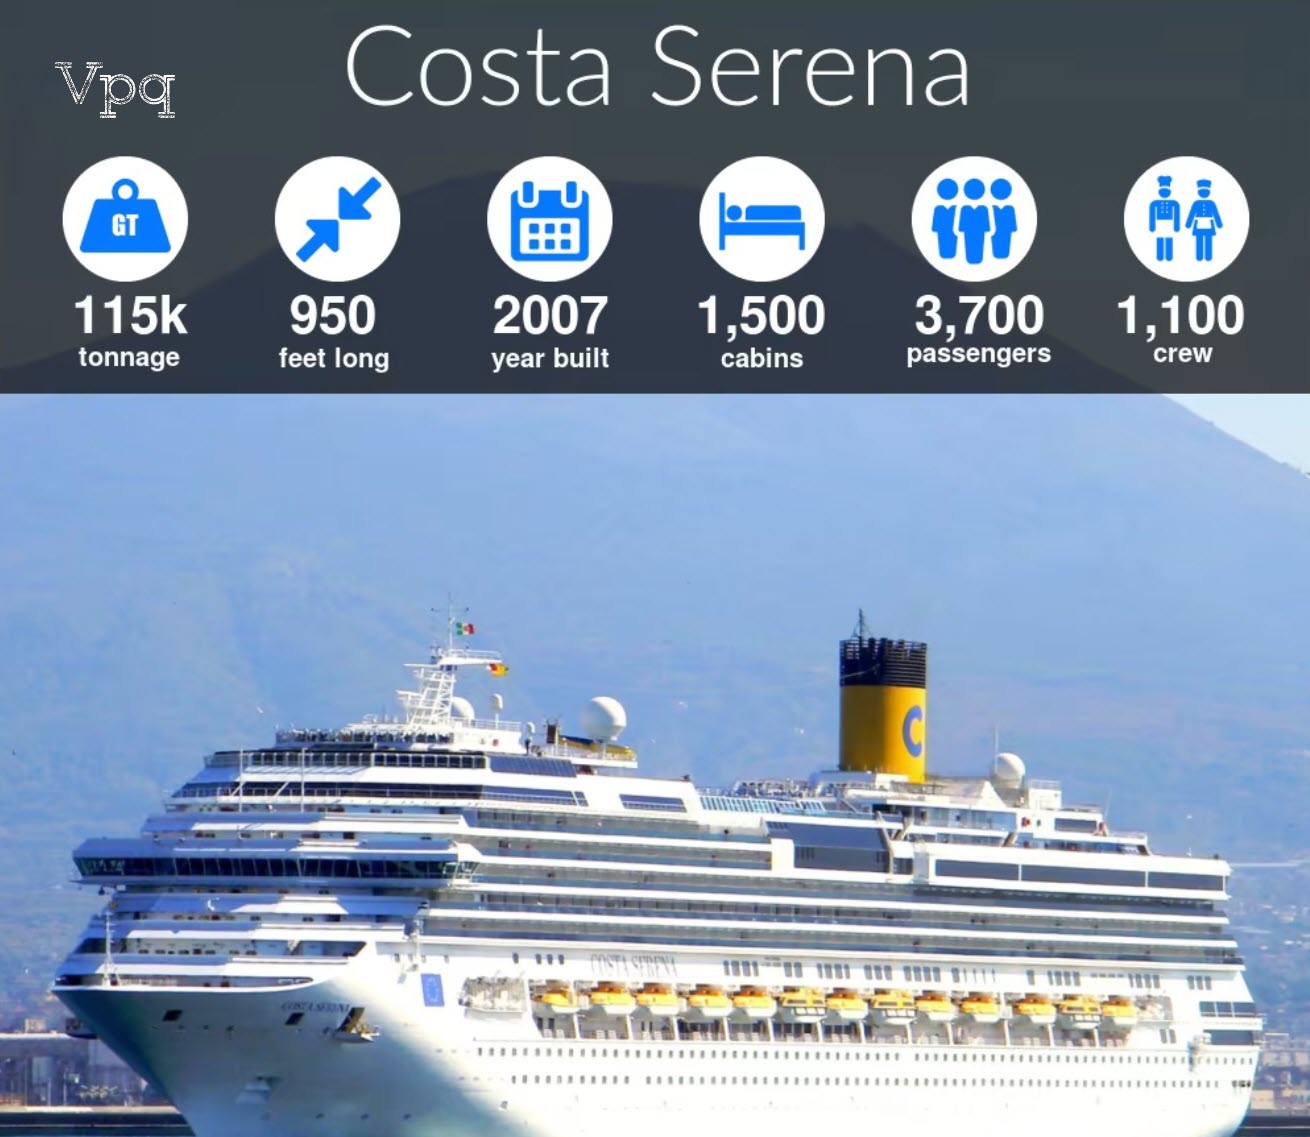 Đồ họa thông tin của Costa Serena